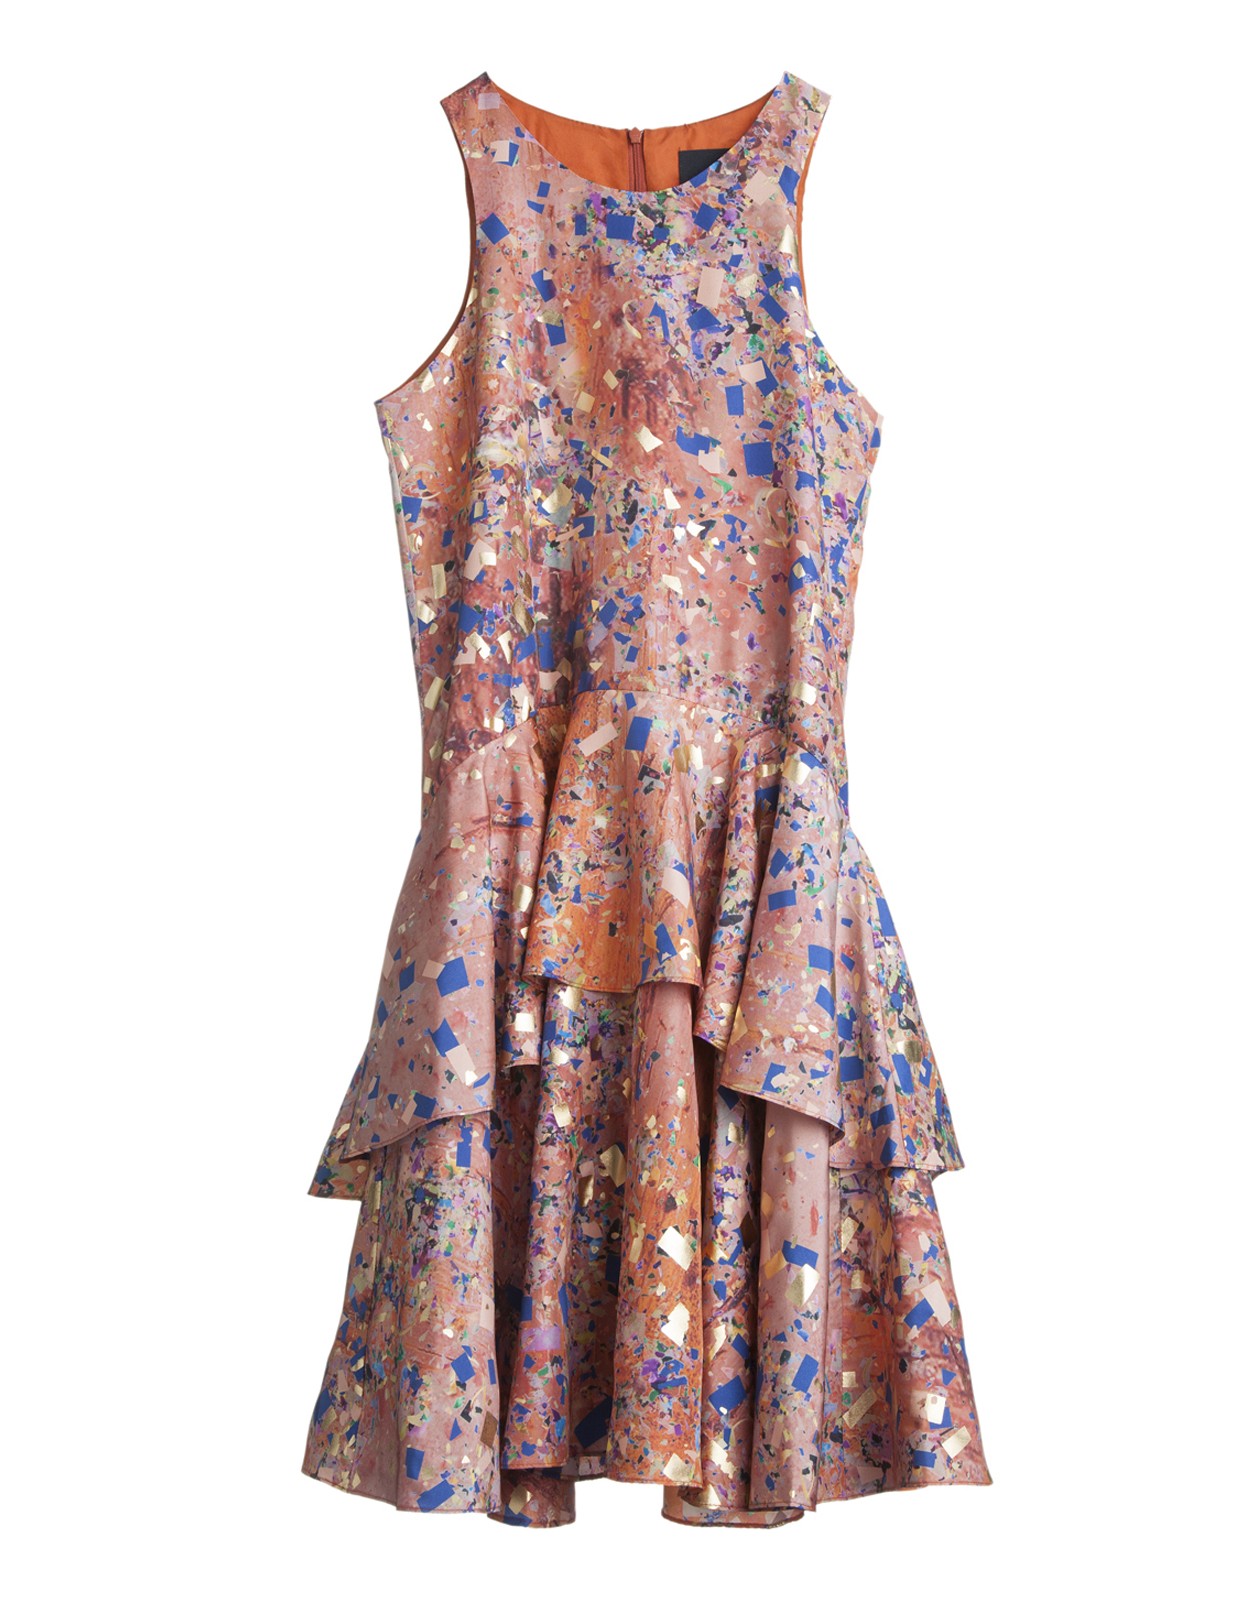 Cynthia Rowley Silk Overlay Dress in Multicolor (Rust) | Lyst